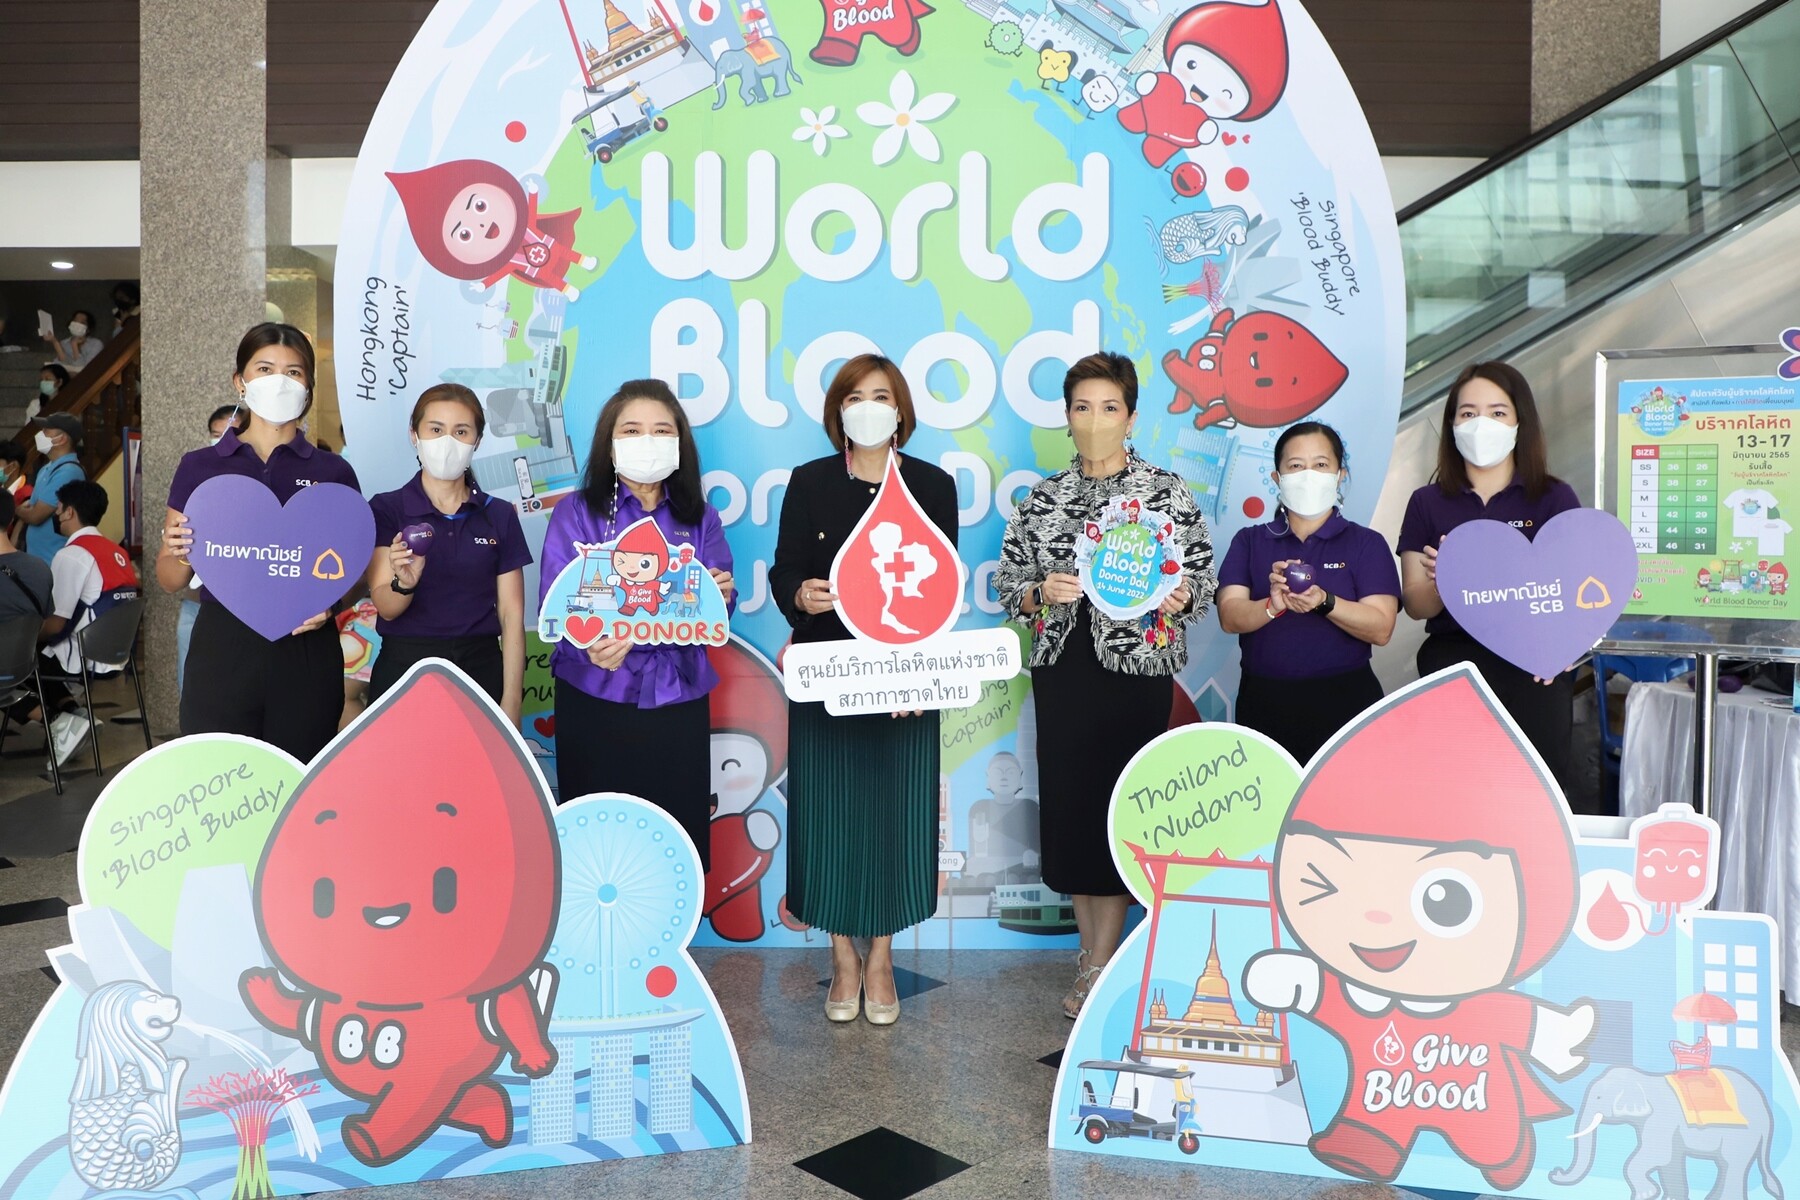 ธนาคารไทยพาณิชย์สนับสนุนกิจกรรมเนื่องในวันผู้บริจาคโลหิตโลก